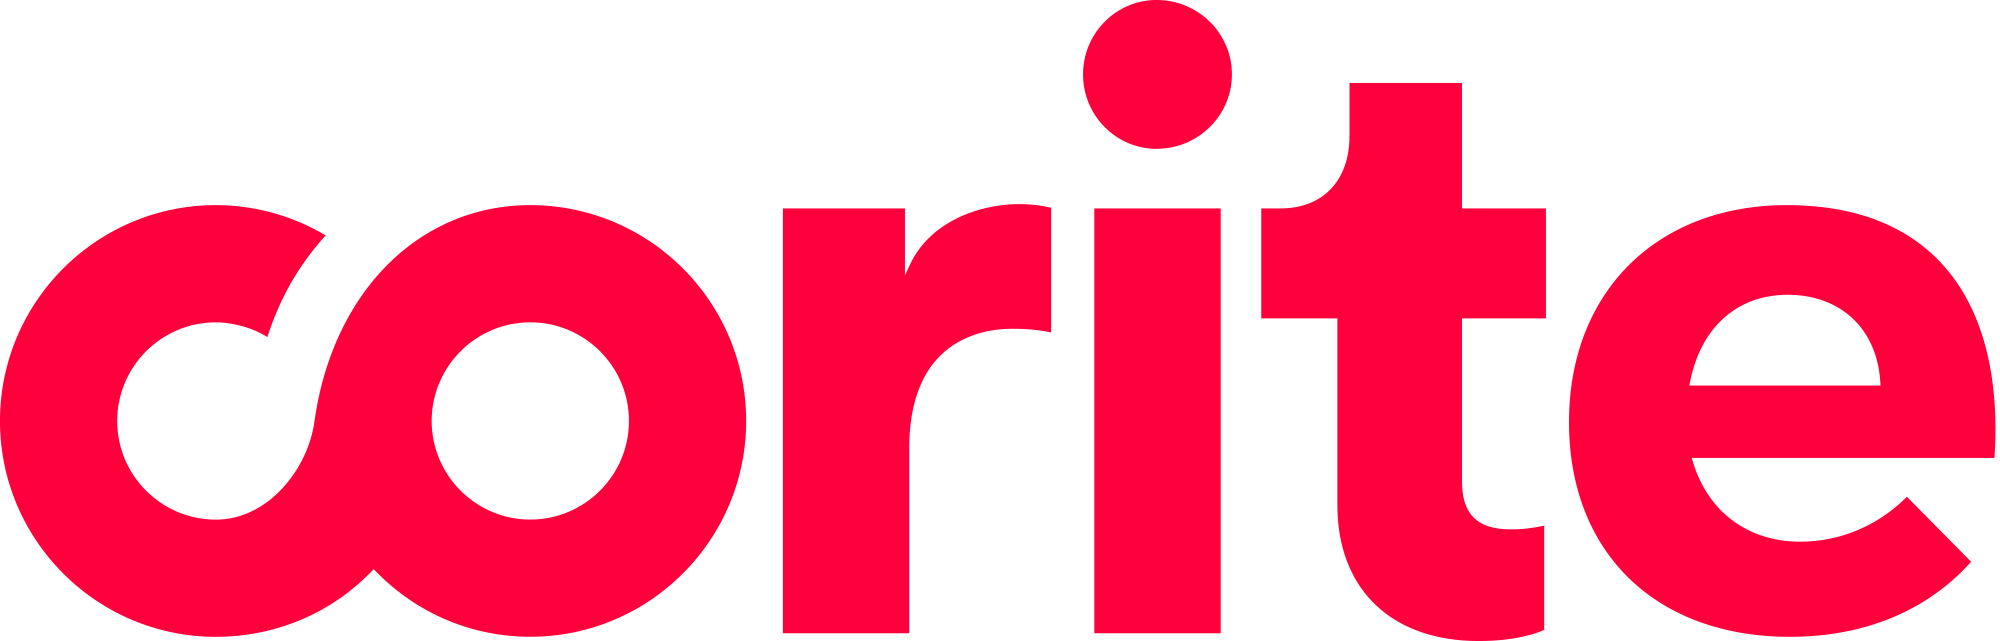 Corite-logo-red-rgb-2000px.png